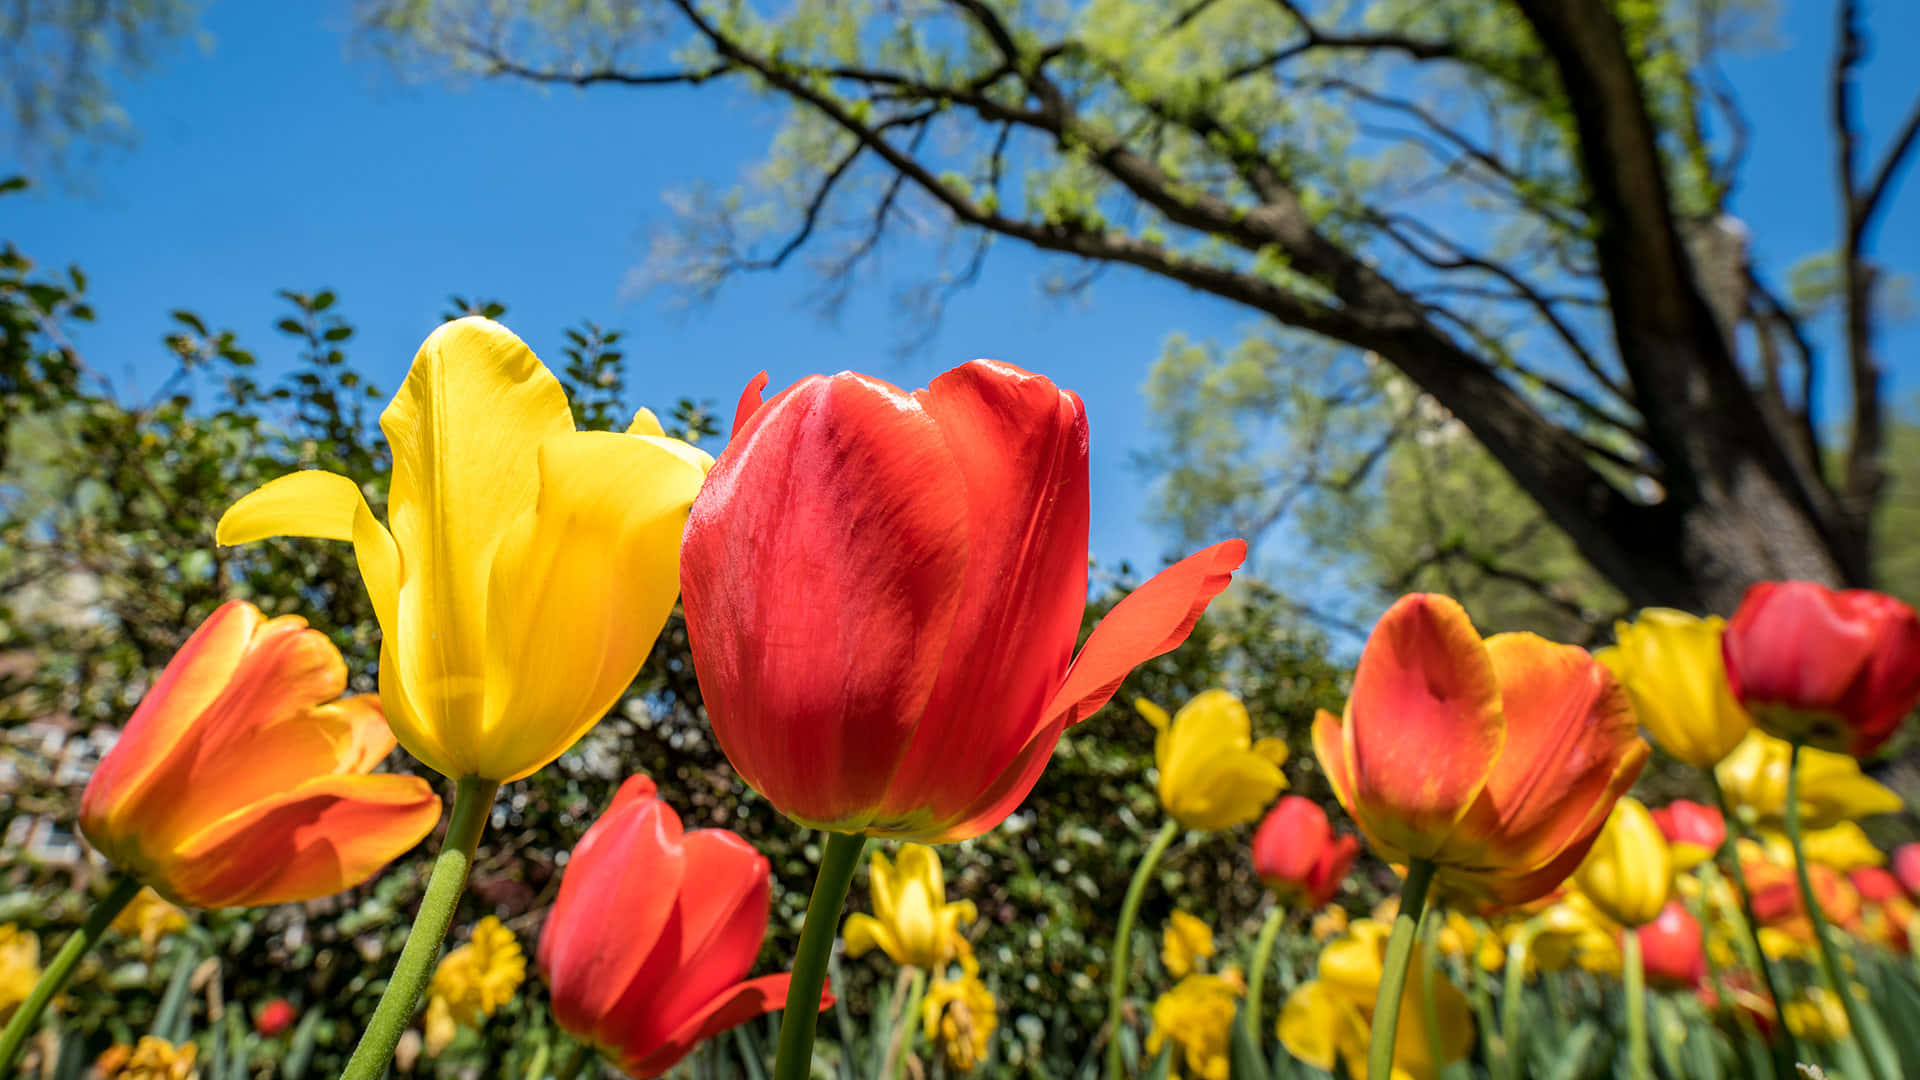 Fondode Pantalla De Zoom De Jardín De Tulipanes En Primavera